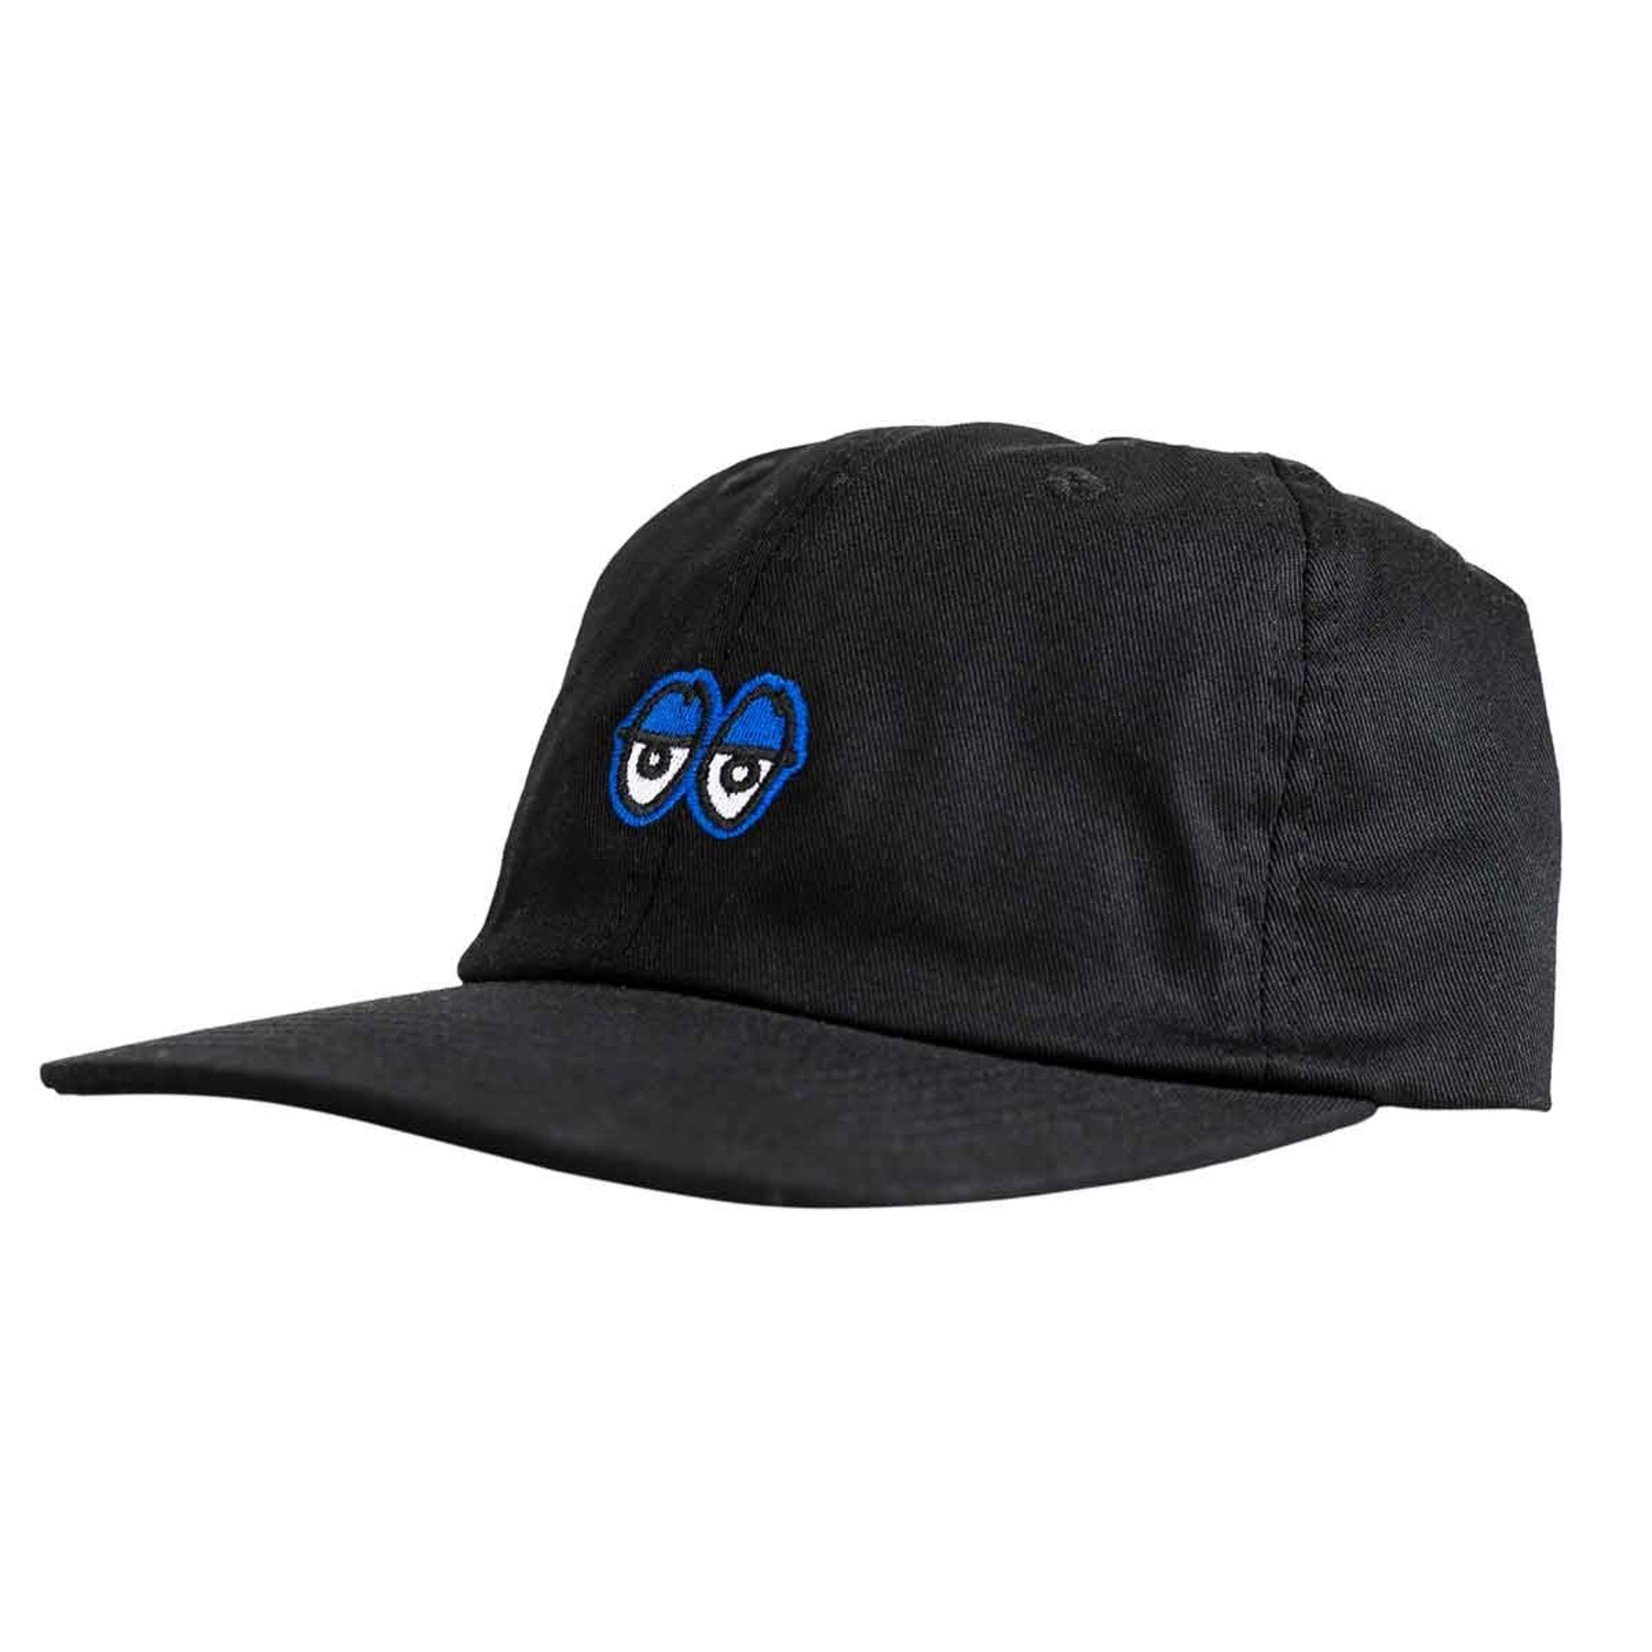 Krooked Krooked Eyes Strapback Hat - Black/Blue